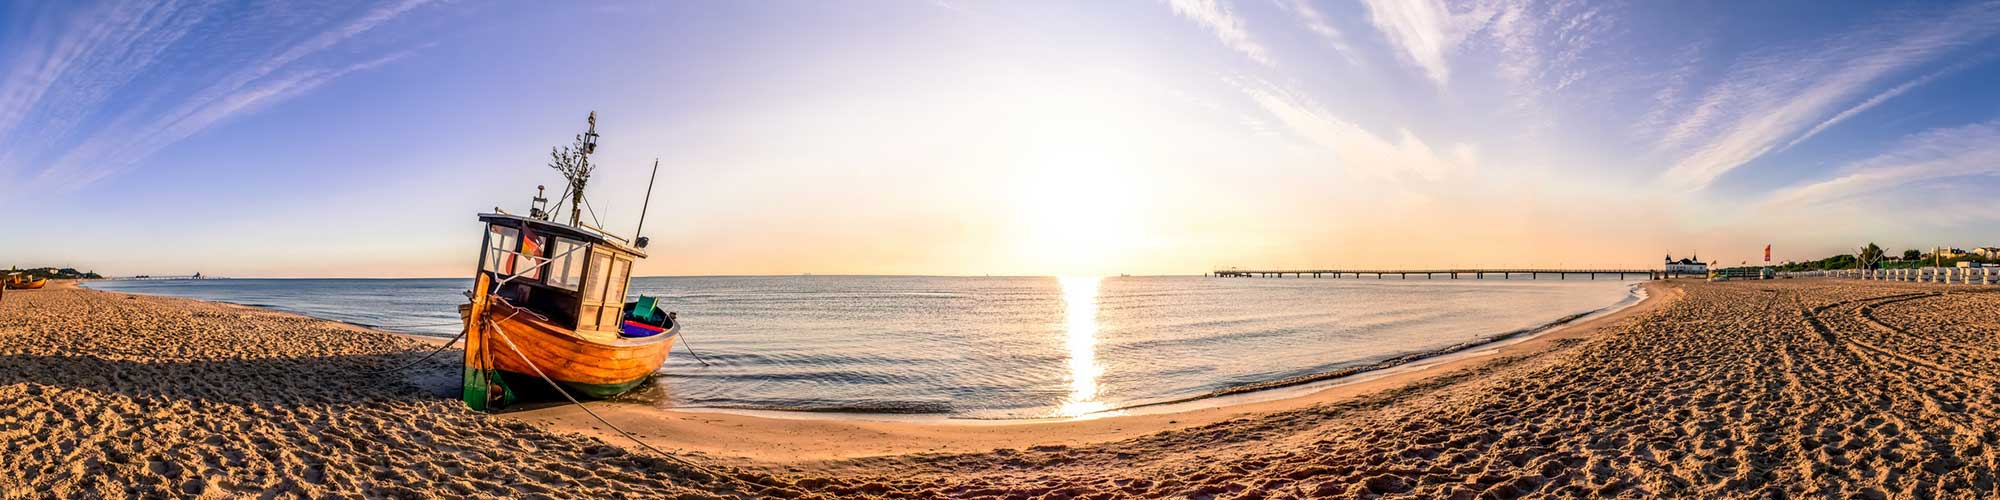 Panoramabild mit Boot am Strand der Ostsee